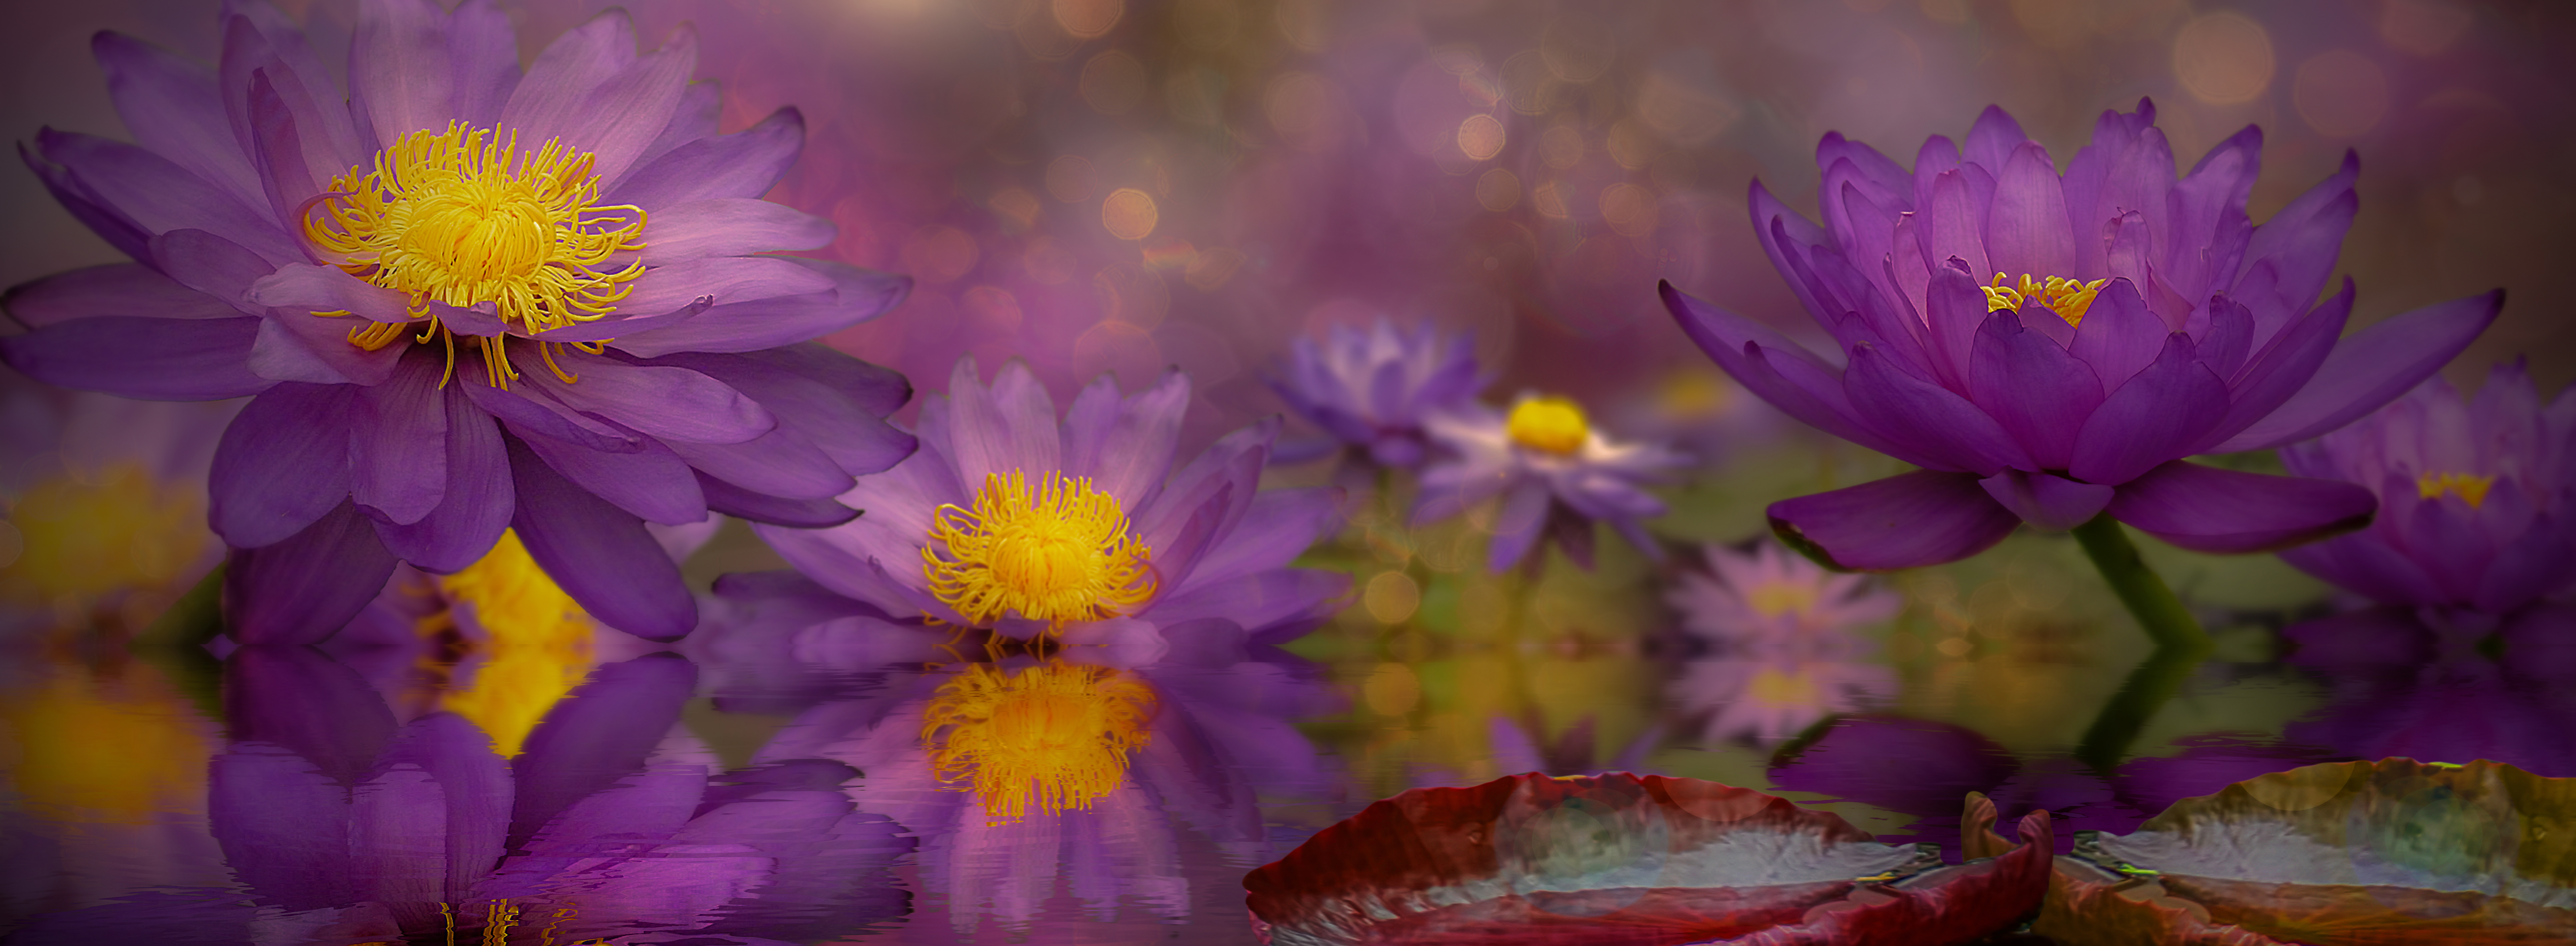 Фото бесплатно цветочная композиция, цветы, вид лотоса